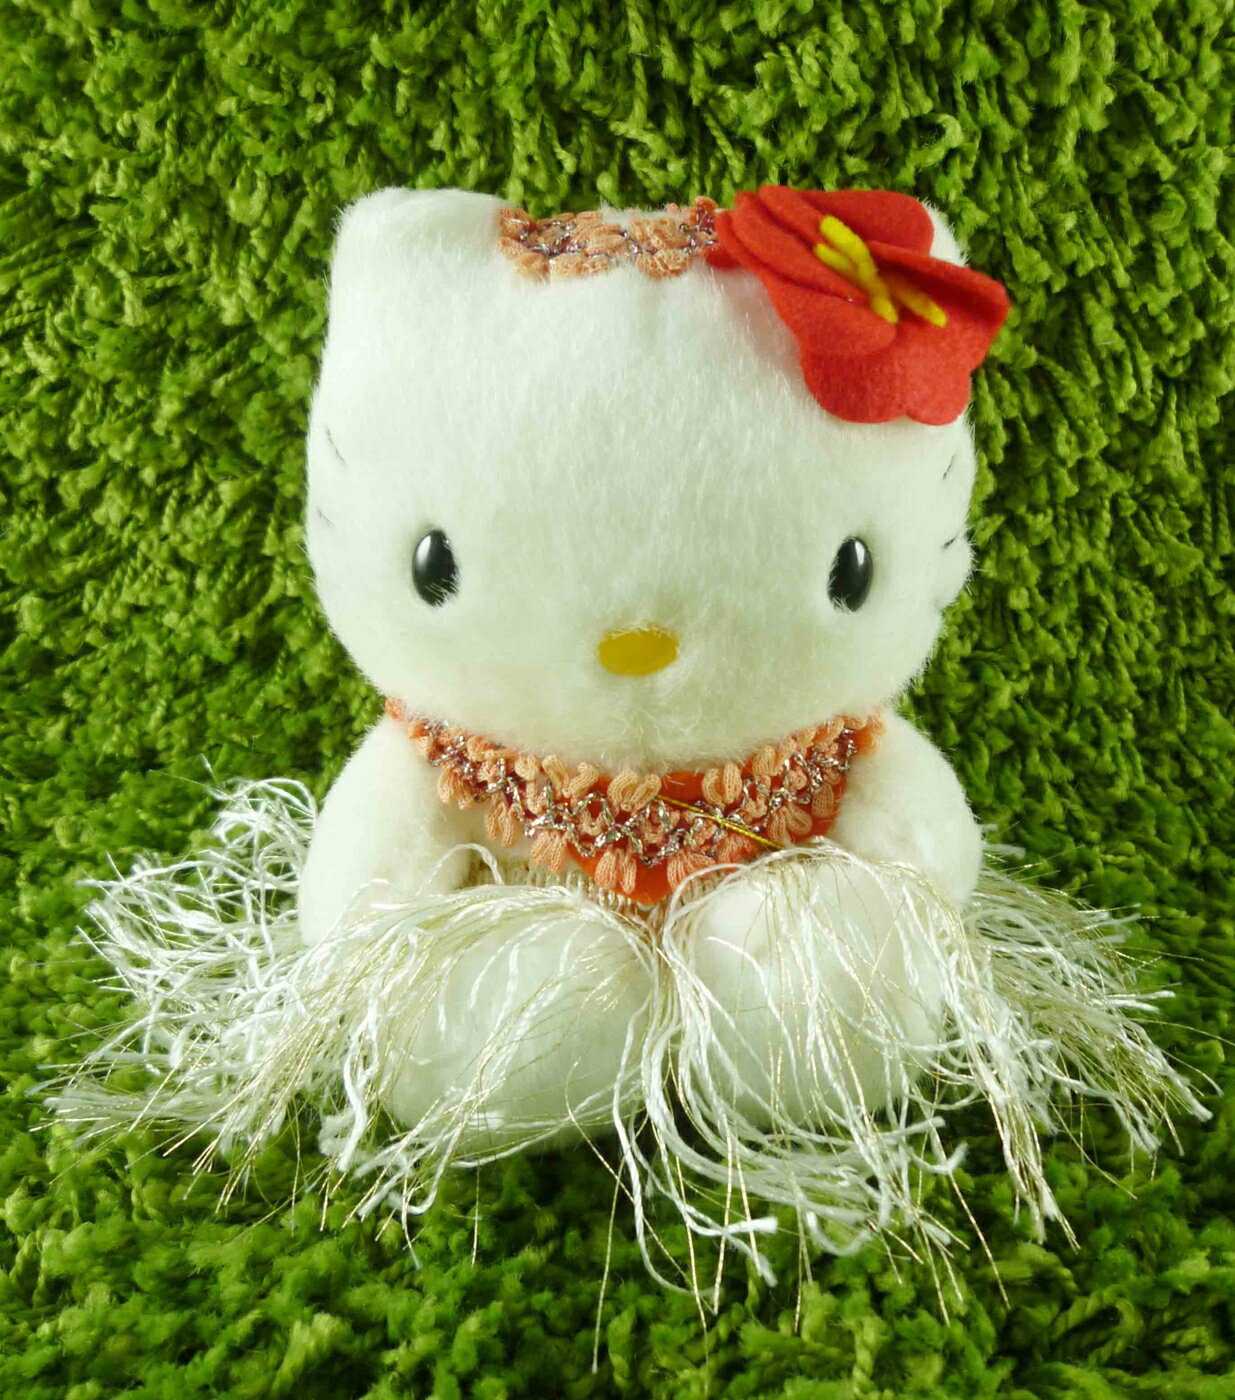 【震撼精品百貨】Hello Kitty 凱蒂貓 KITTY絨毛娃娃-夏威夷服飾-紅色 震撼日式精品百貨